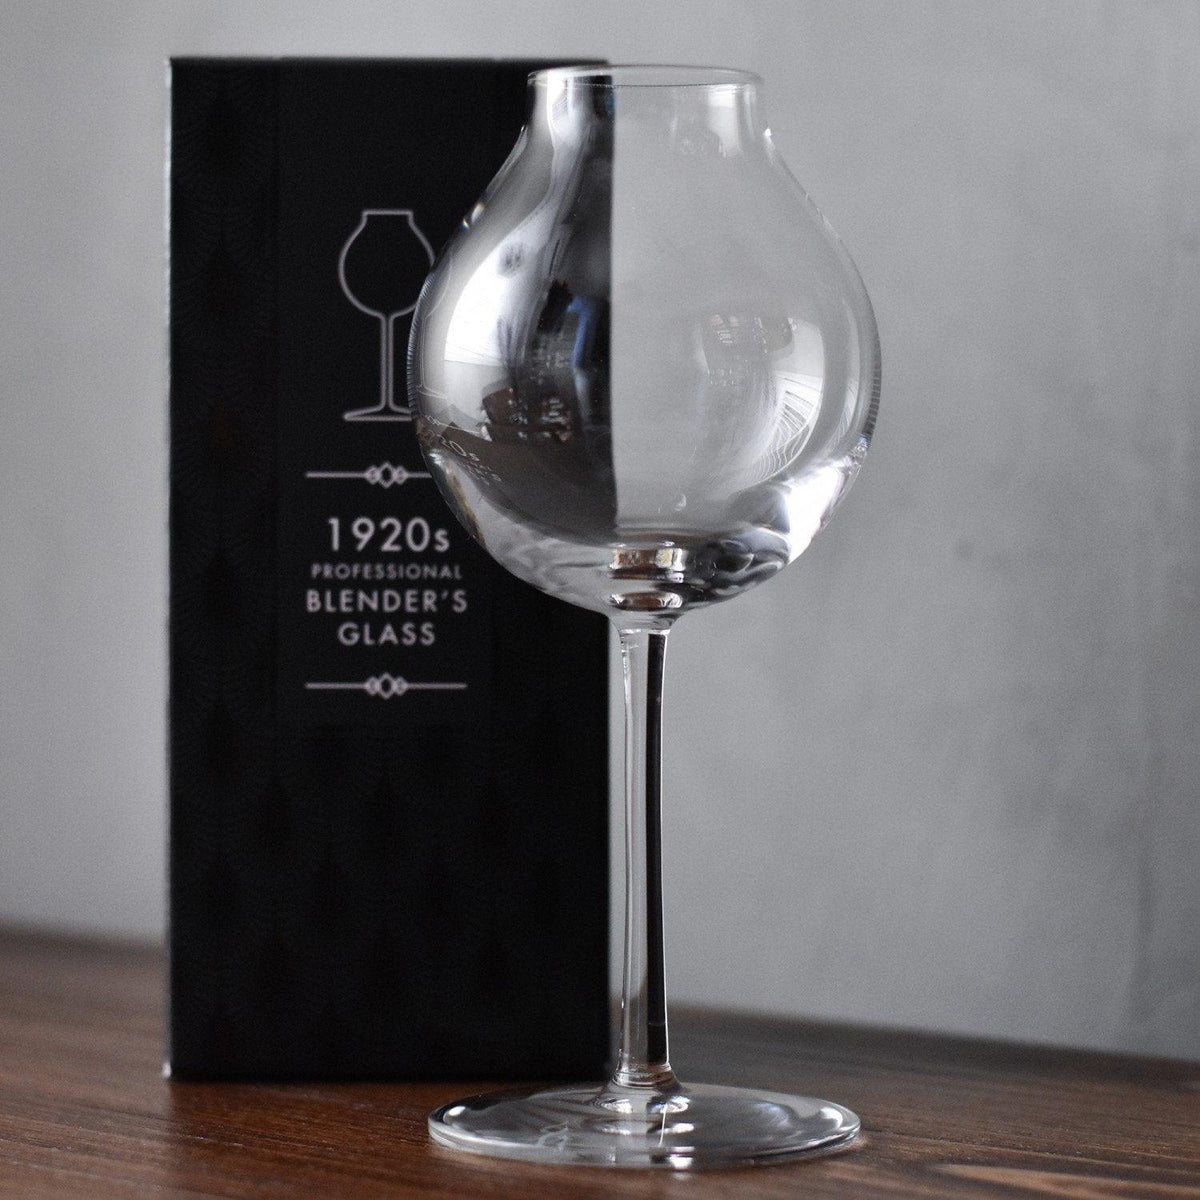 1920s' Blender's Whisky Glass - The Rare Malt